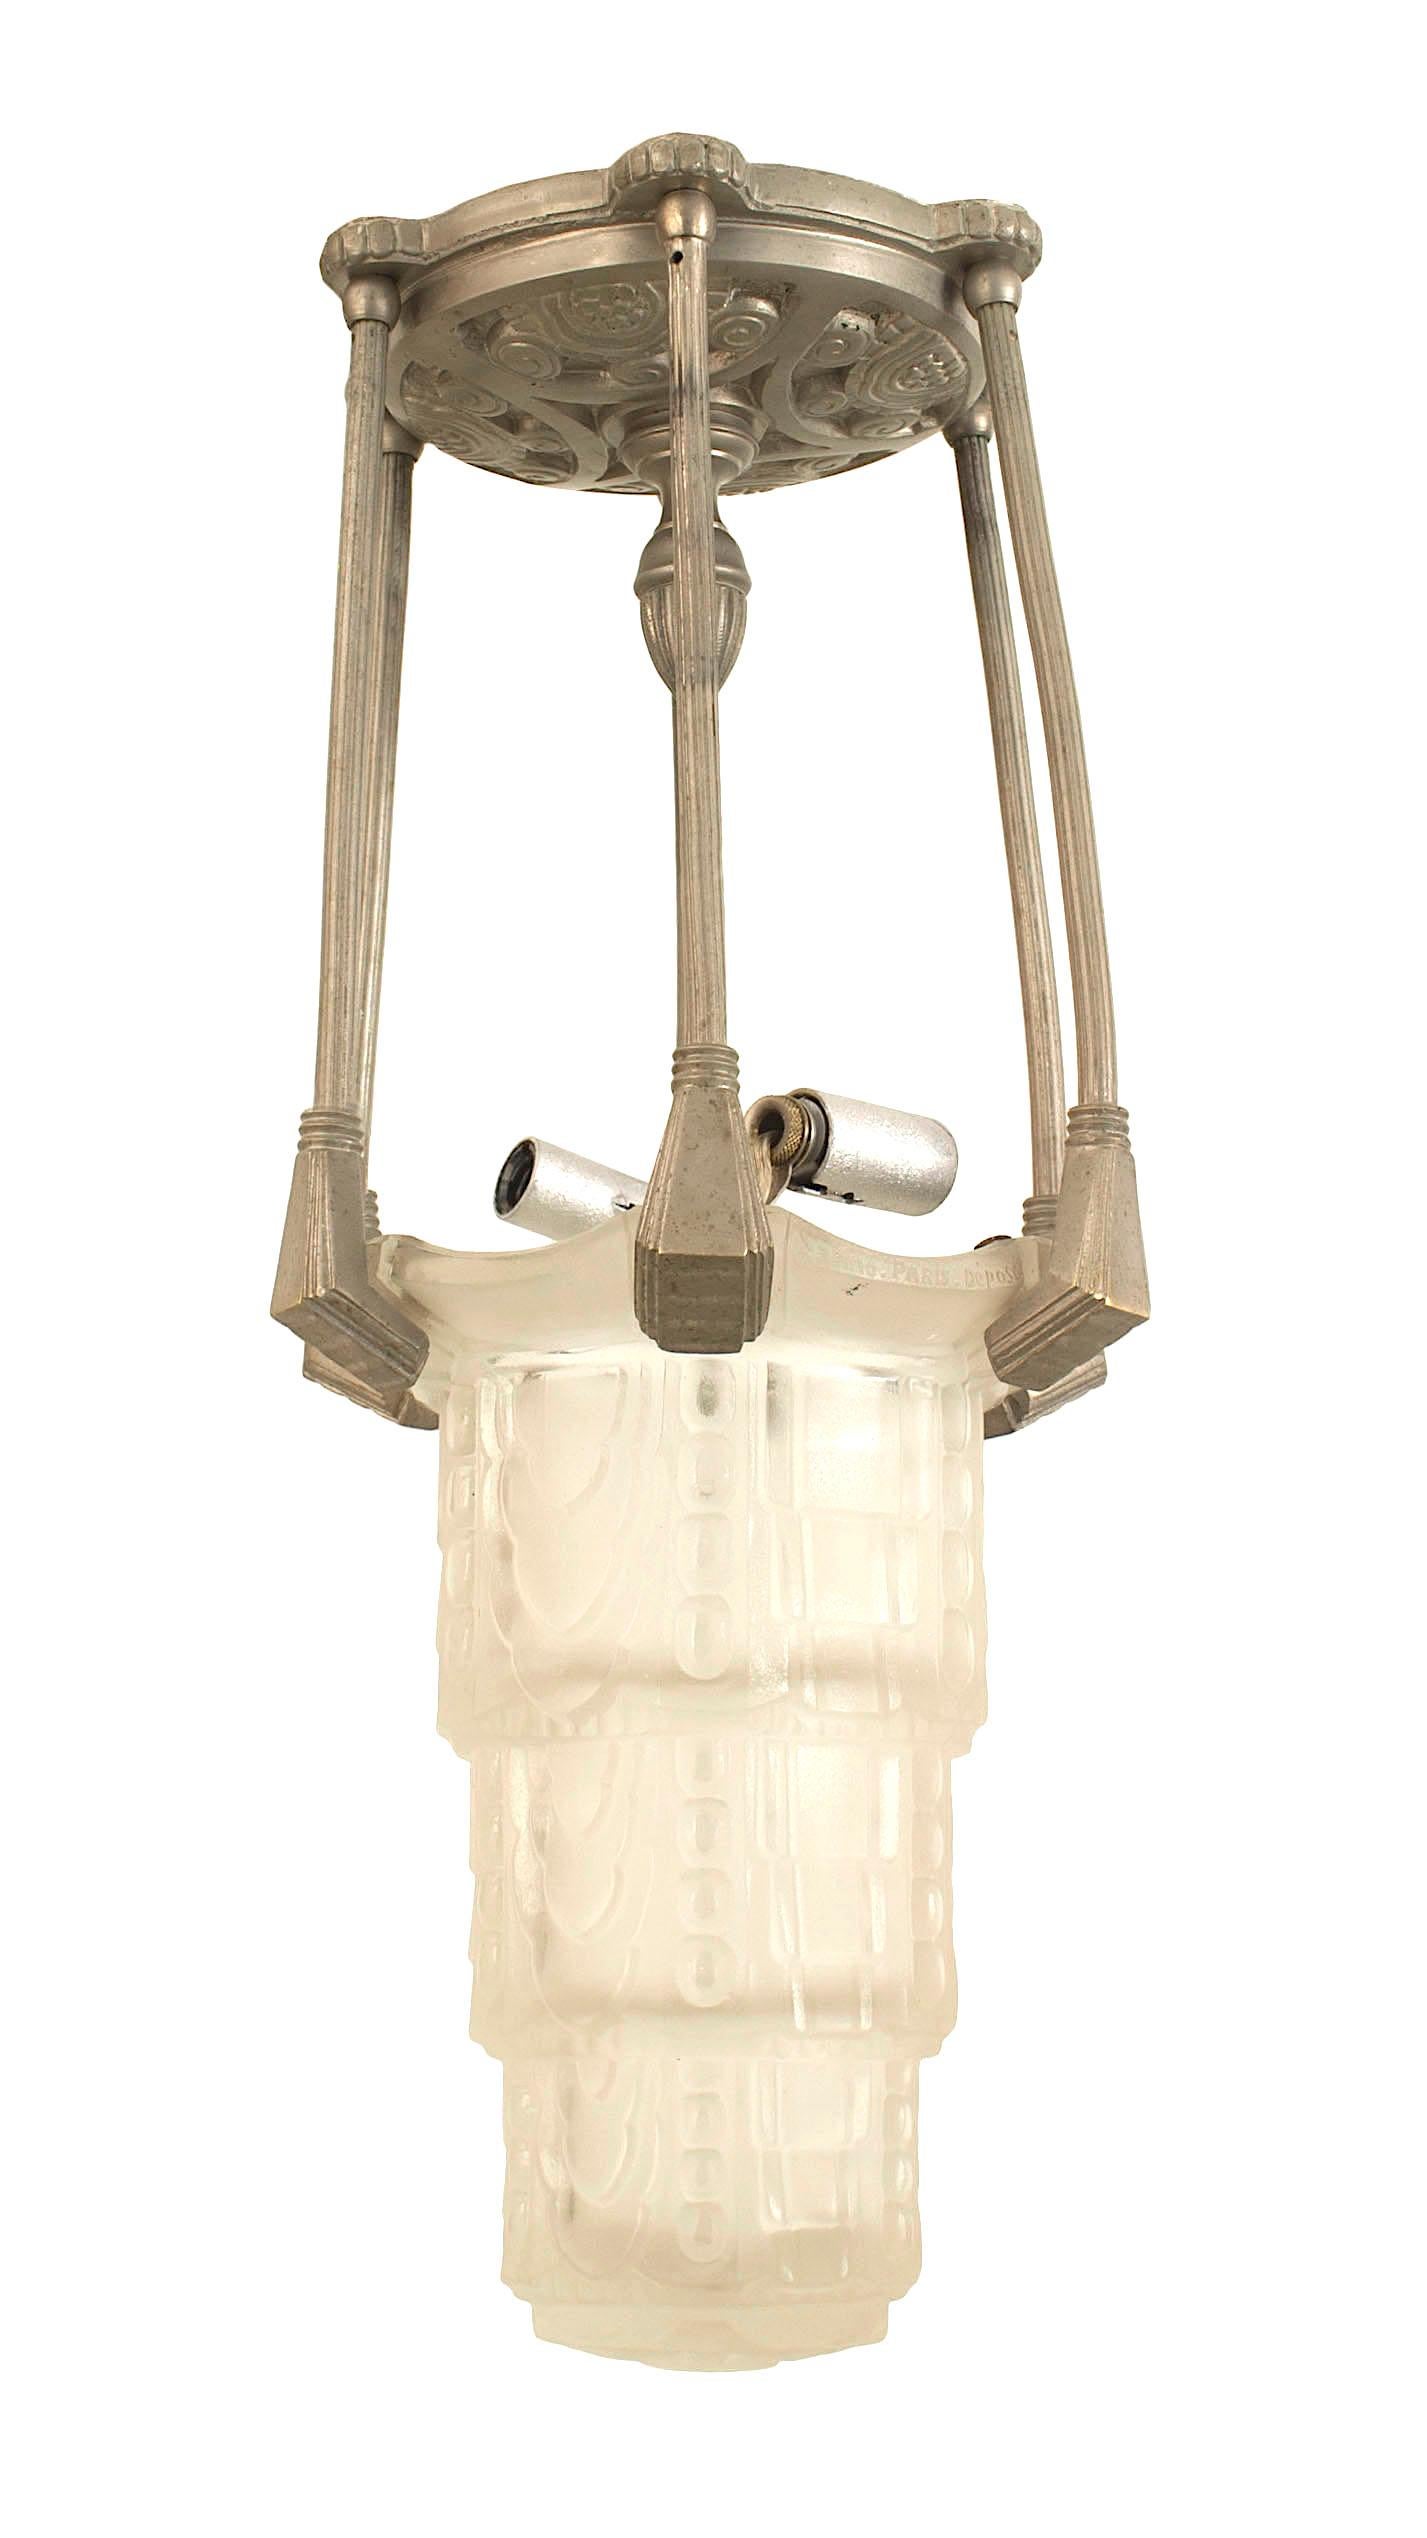 Kleine französische Laterne im Art déco-Stil (um 1925) mit einem 6-seitigen Schirm aus mattiertem, dreistufigem Pressglas, der an einem versilberten Metallrahmen unter einem großen runden Baldachin aufgehängt ist (SABINO).
